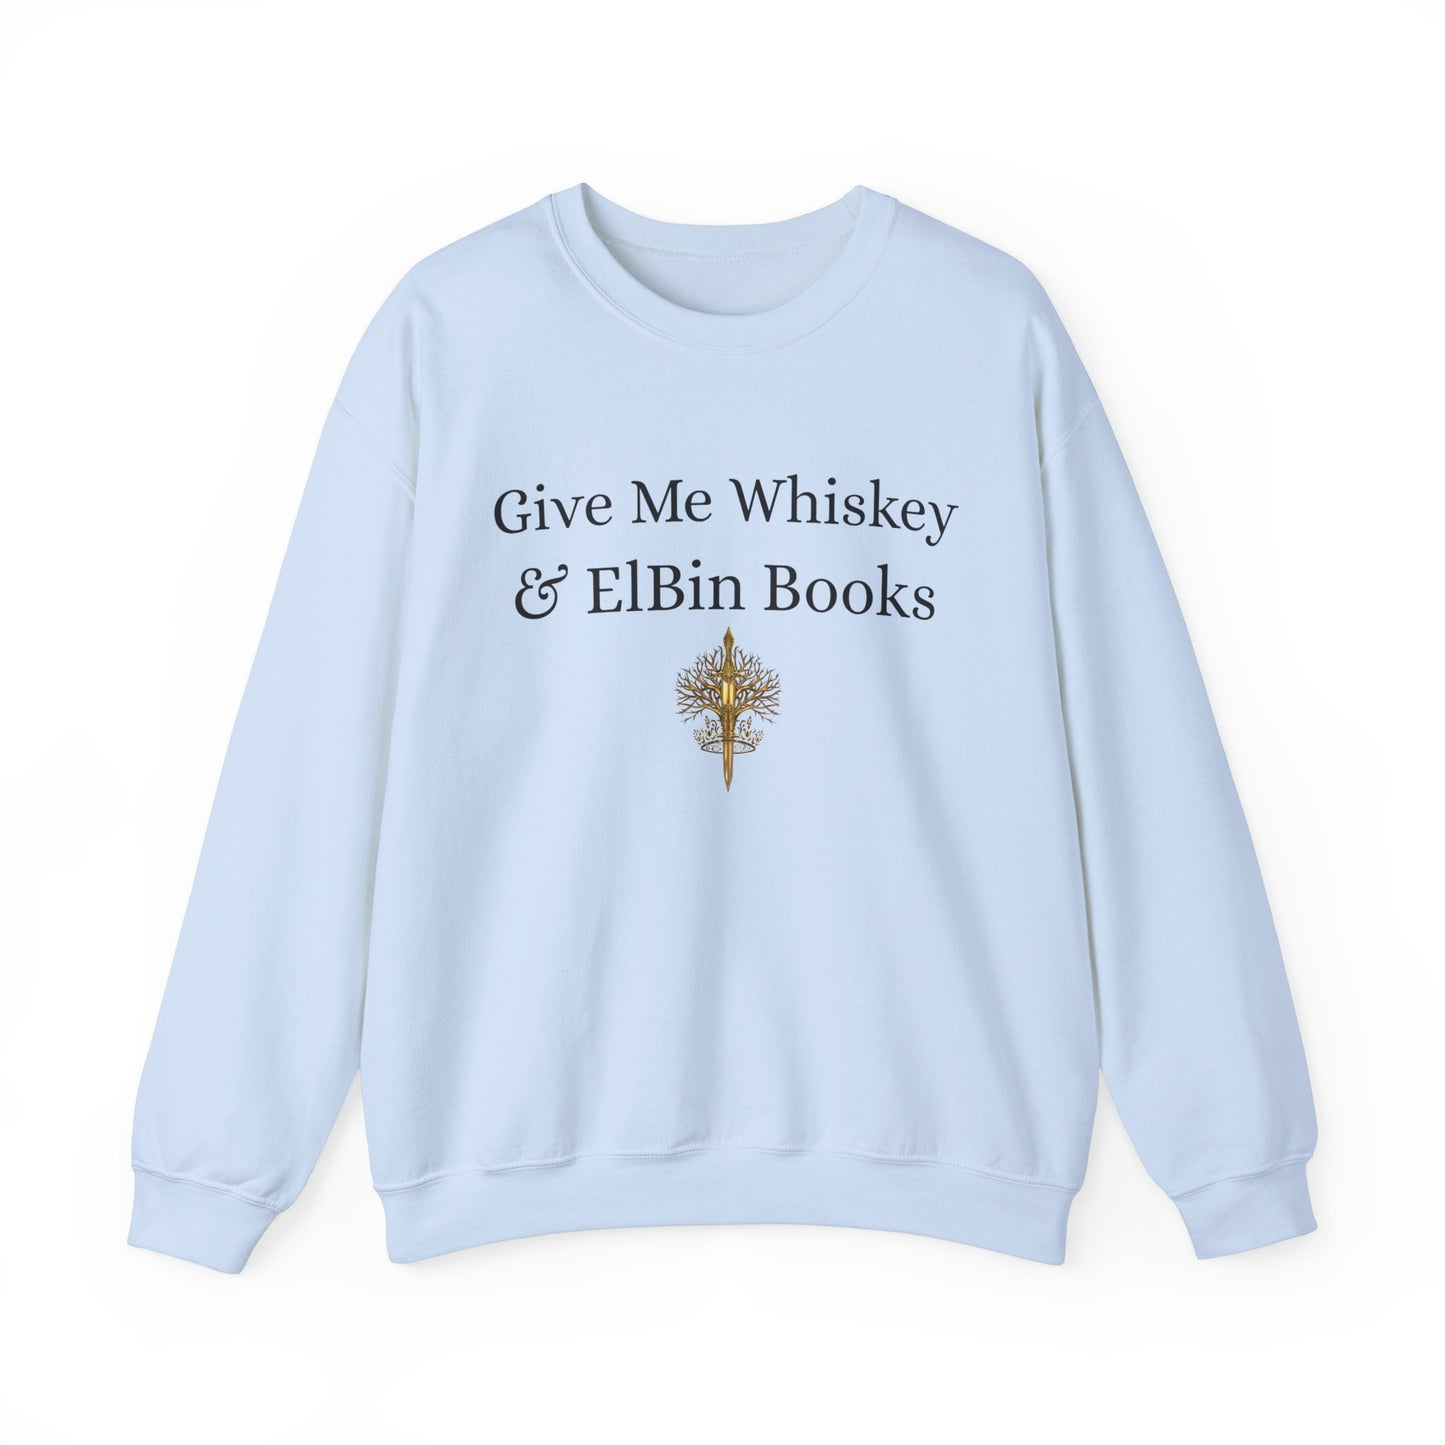 Whiskey & ElBin Books Crewneck Sweatshirt